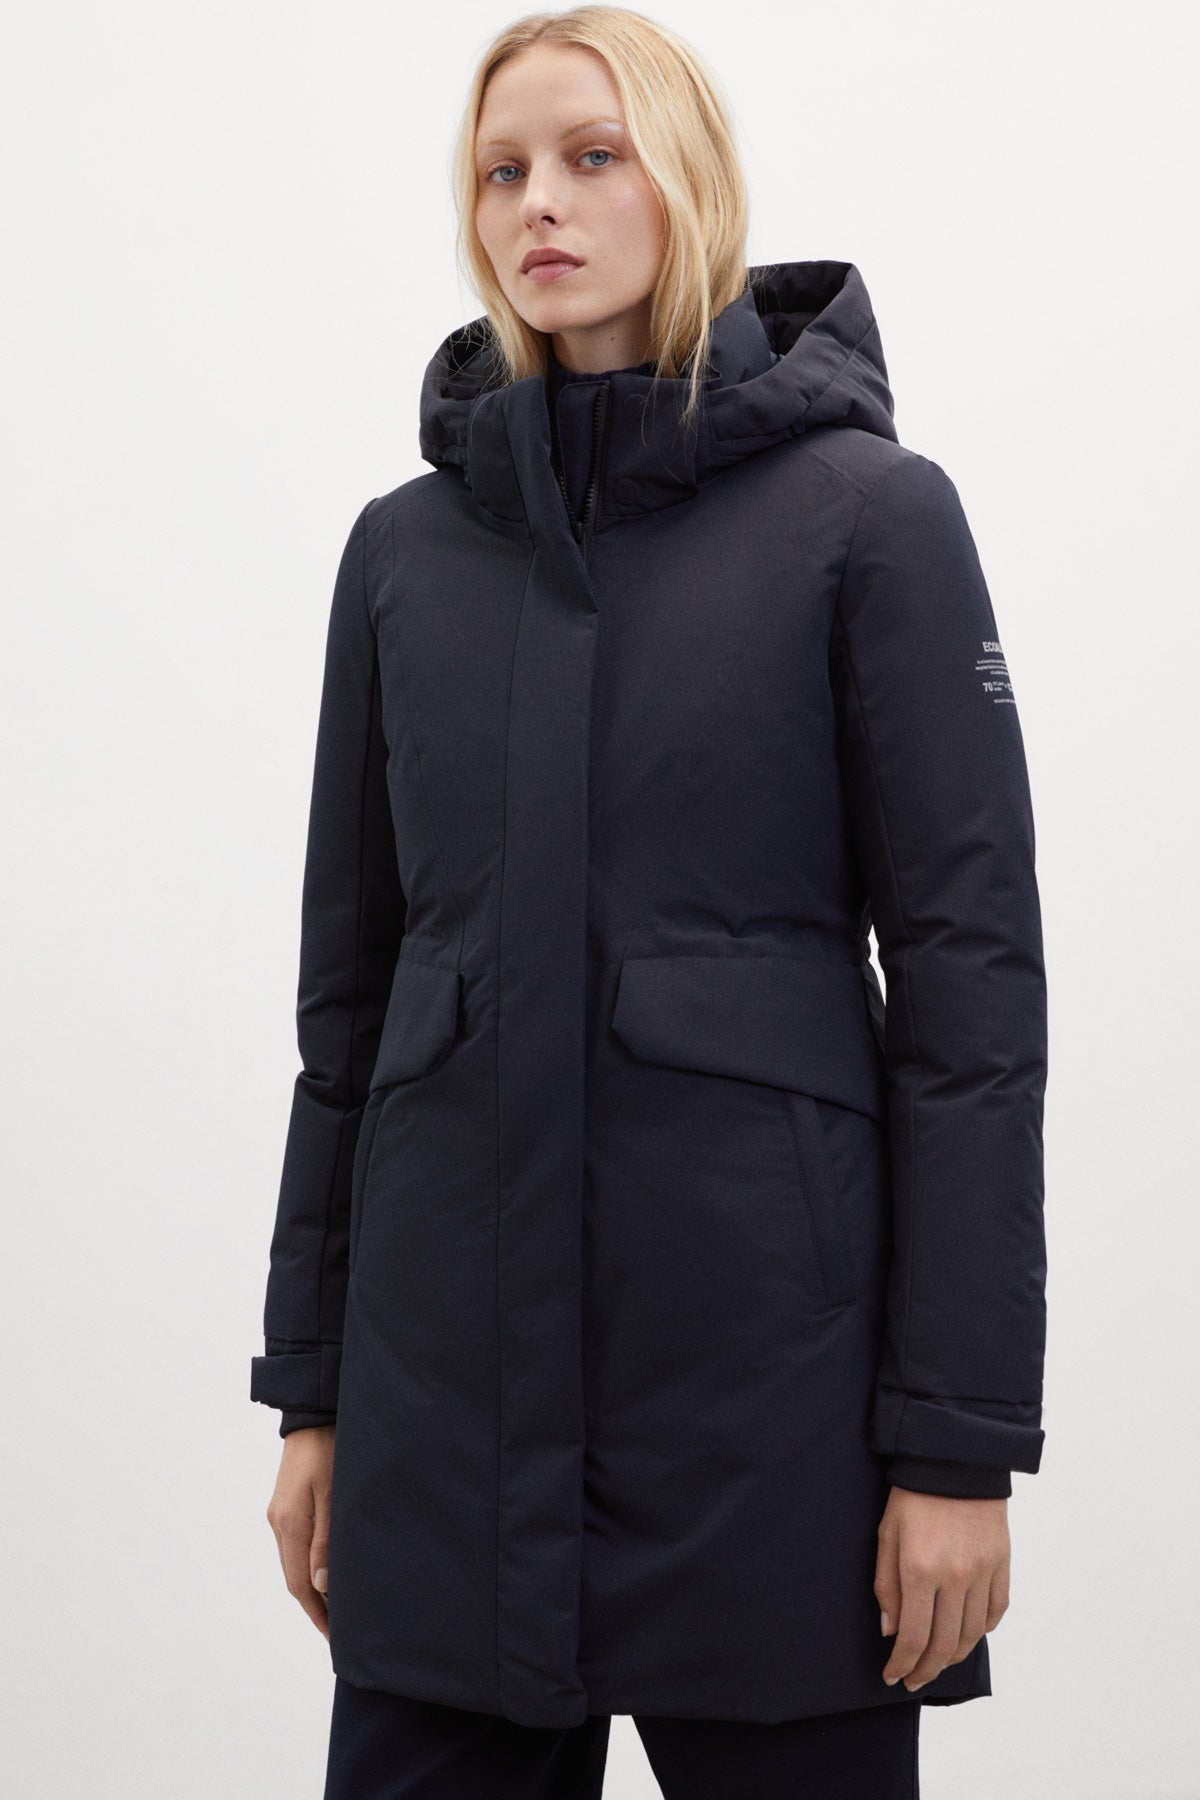 Women's coats and jackets | ECOALF Jackets